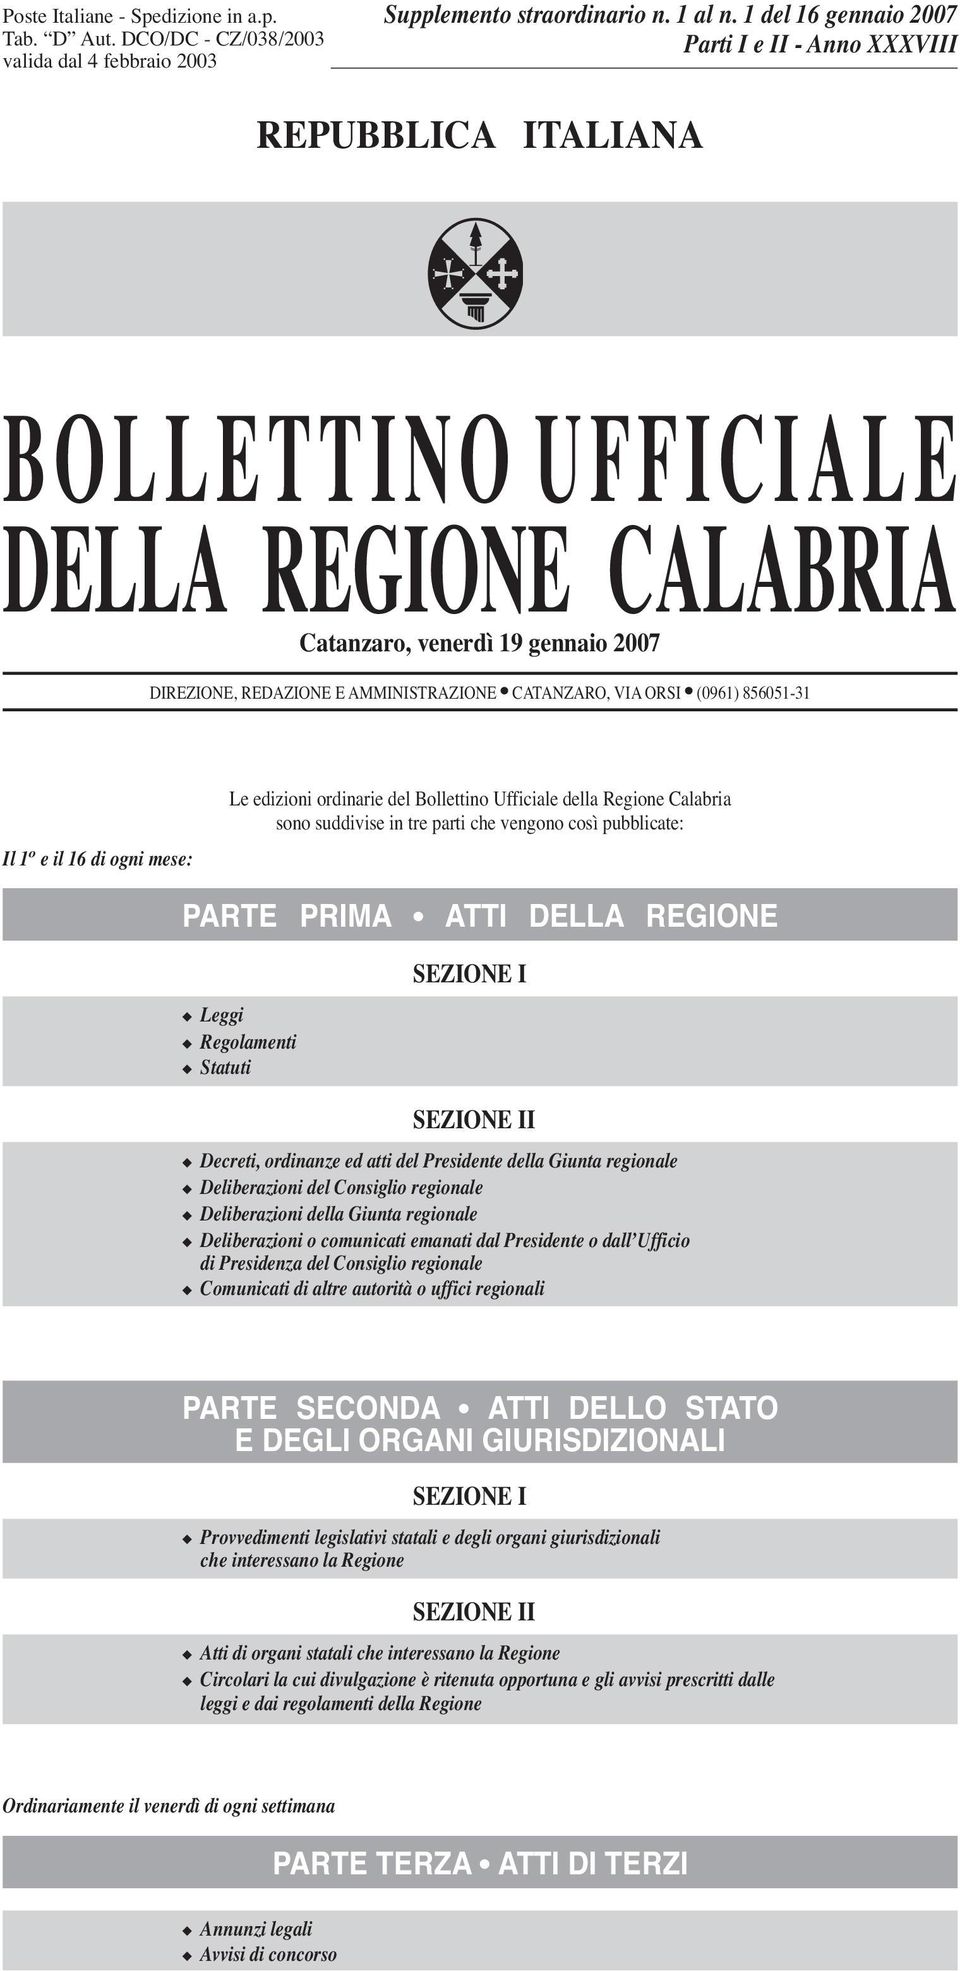 ORSI (0961) 856051-31 Il 1 o eil16diogni mese: Le edizioni ordinarie del Bollettino Ufficiale della Regione Calabria sono suddivise in tre parti che vengono così pubblicate: PARTE PRIMA ATTI DELLA